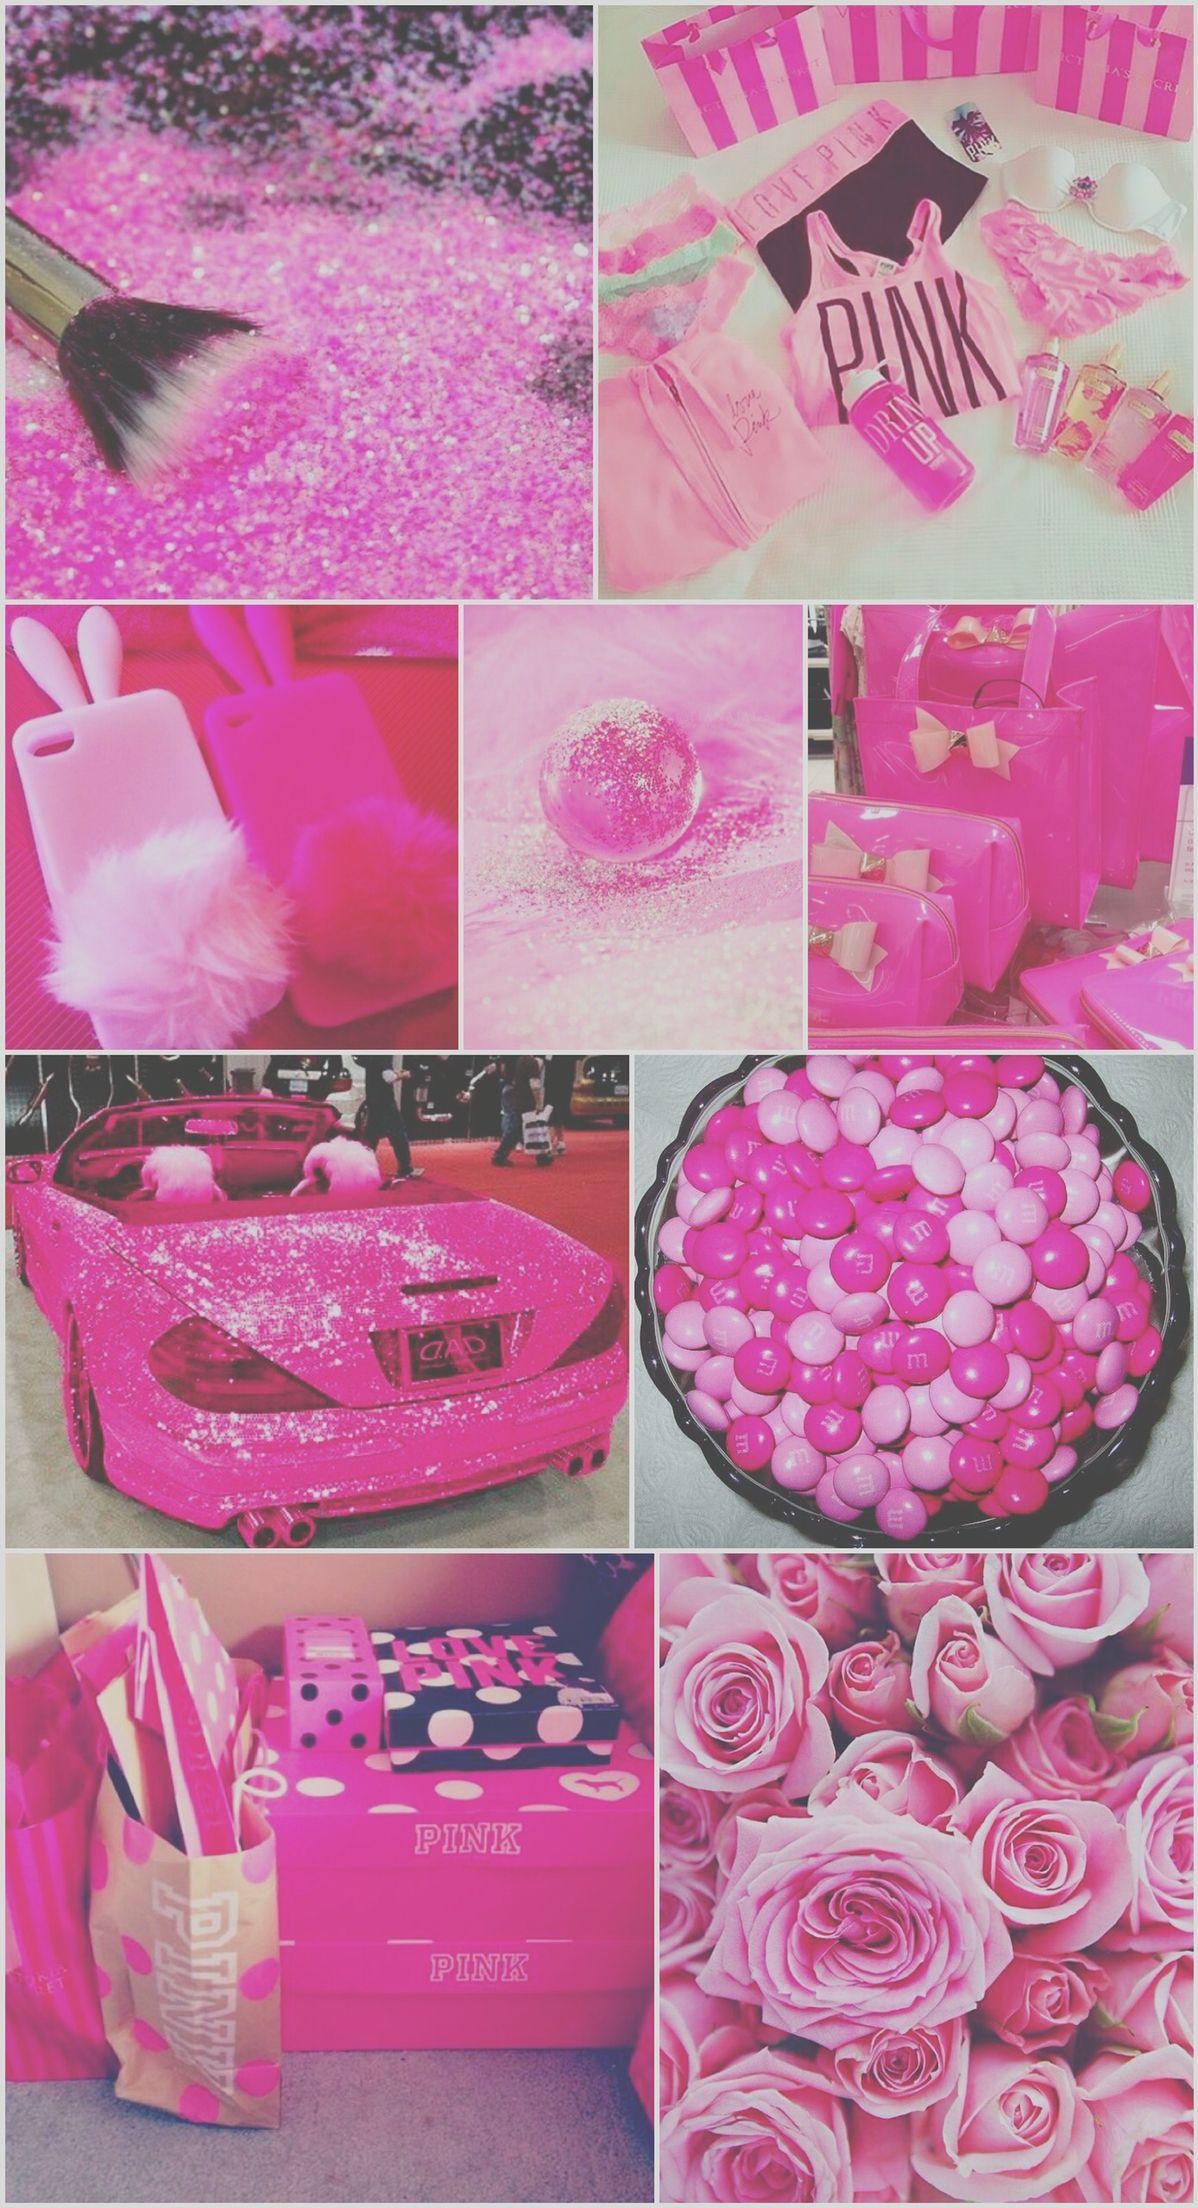 Pink Stuff Wallpaper, background, iPhone, cute, pretty, glitter